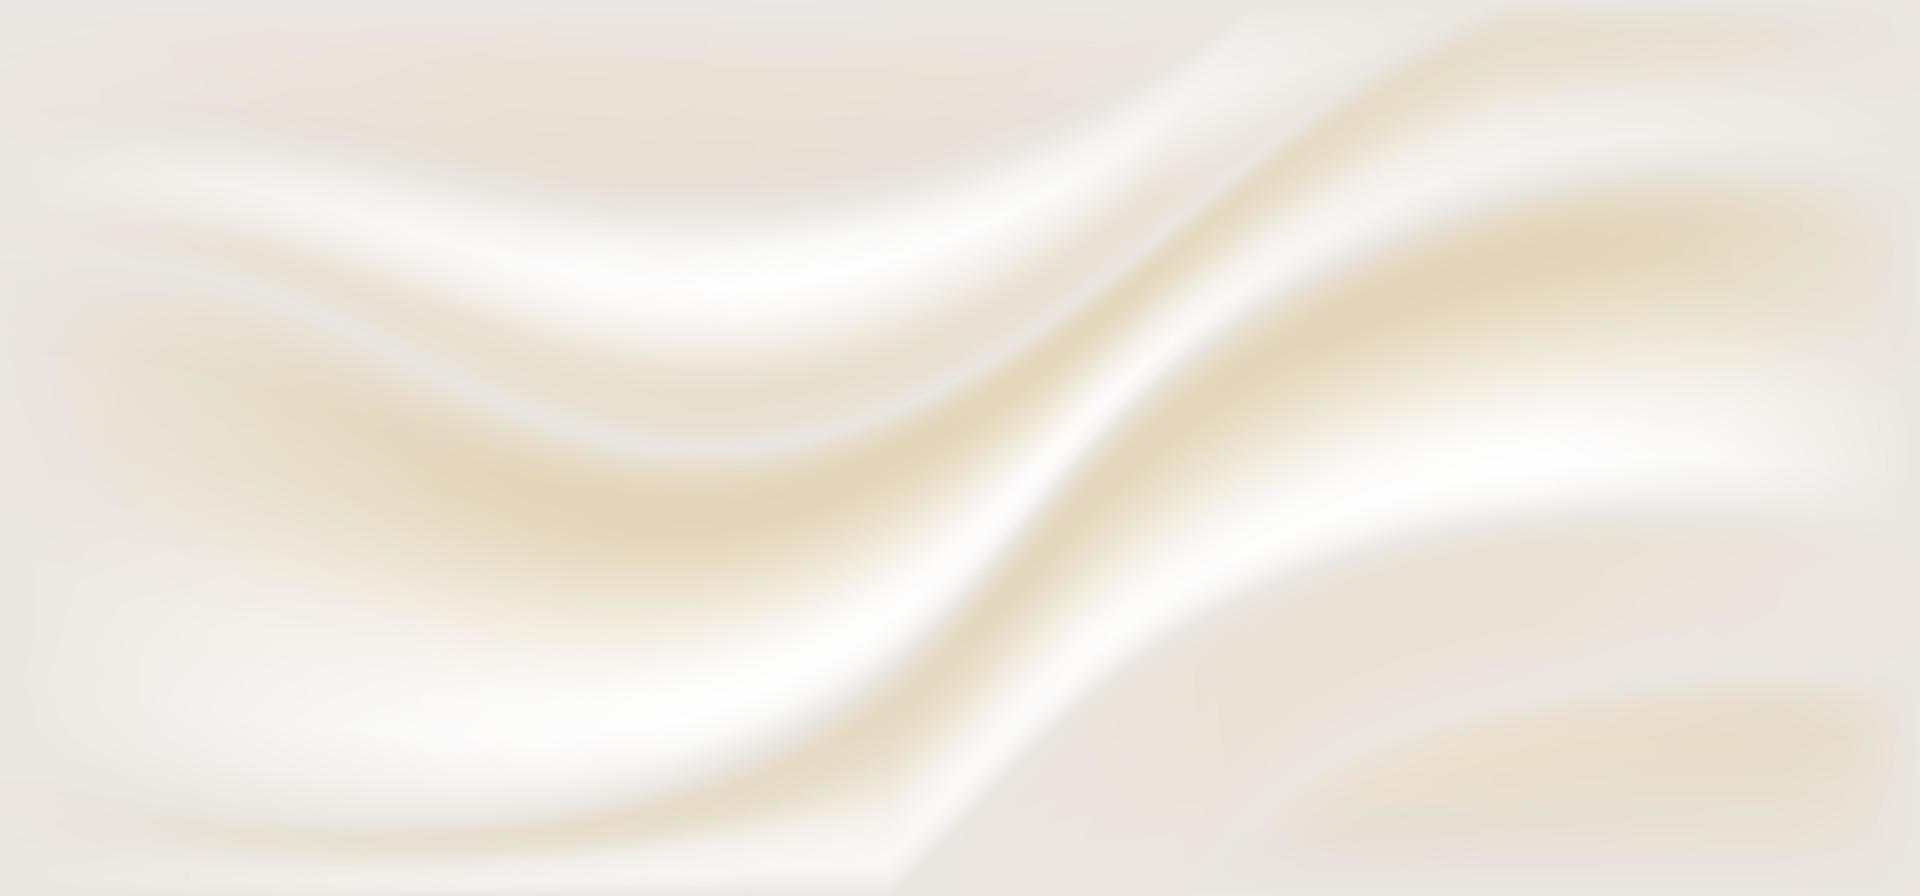 abstrakte stofffalte beige braun glatte farbe hintergrundtextur luxusstil vektor